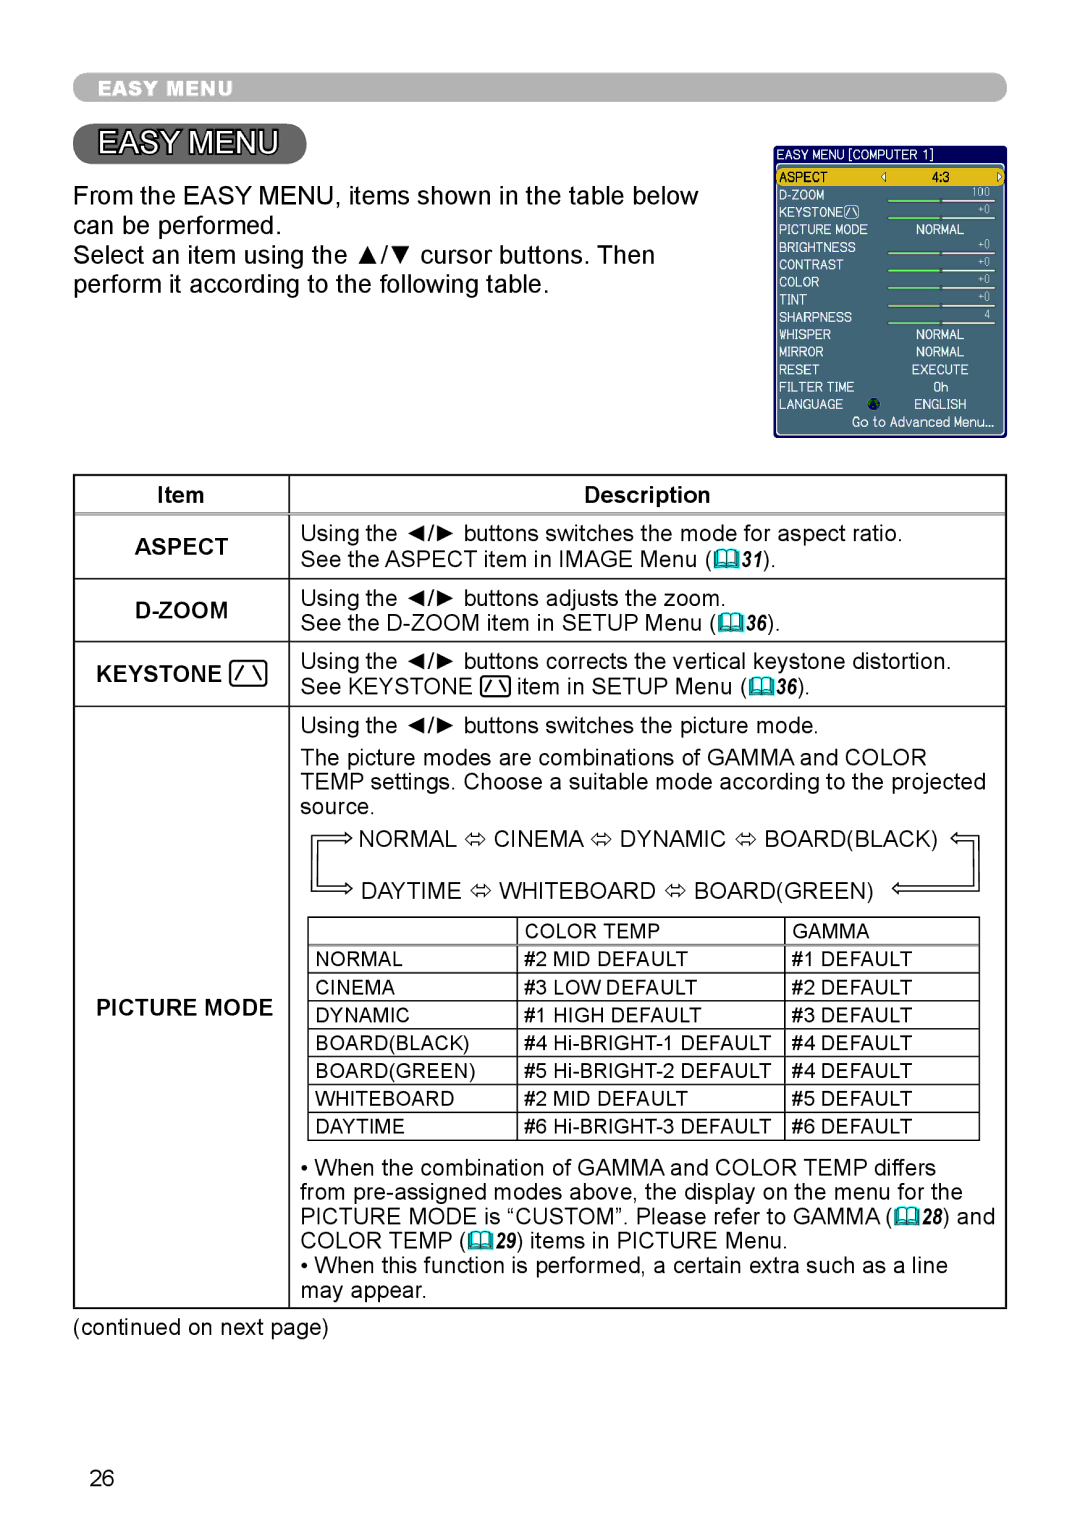 Epson 8100 user manual Description, Aspect, Zoom, Keystone, Picture Mode 